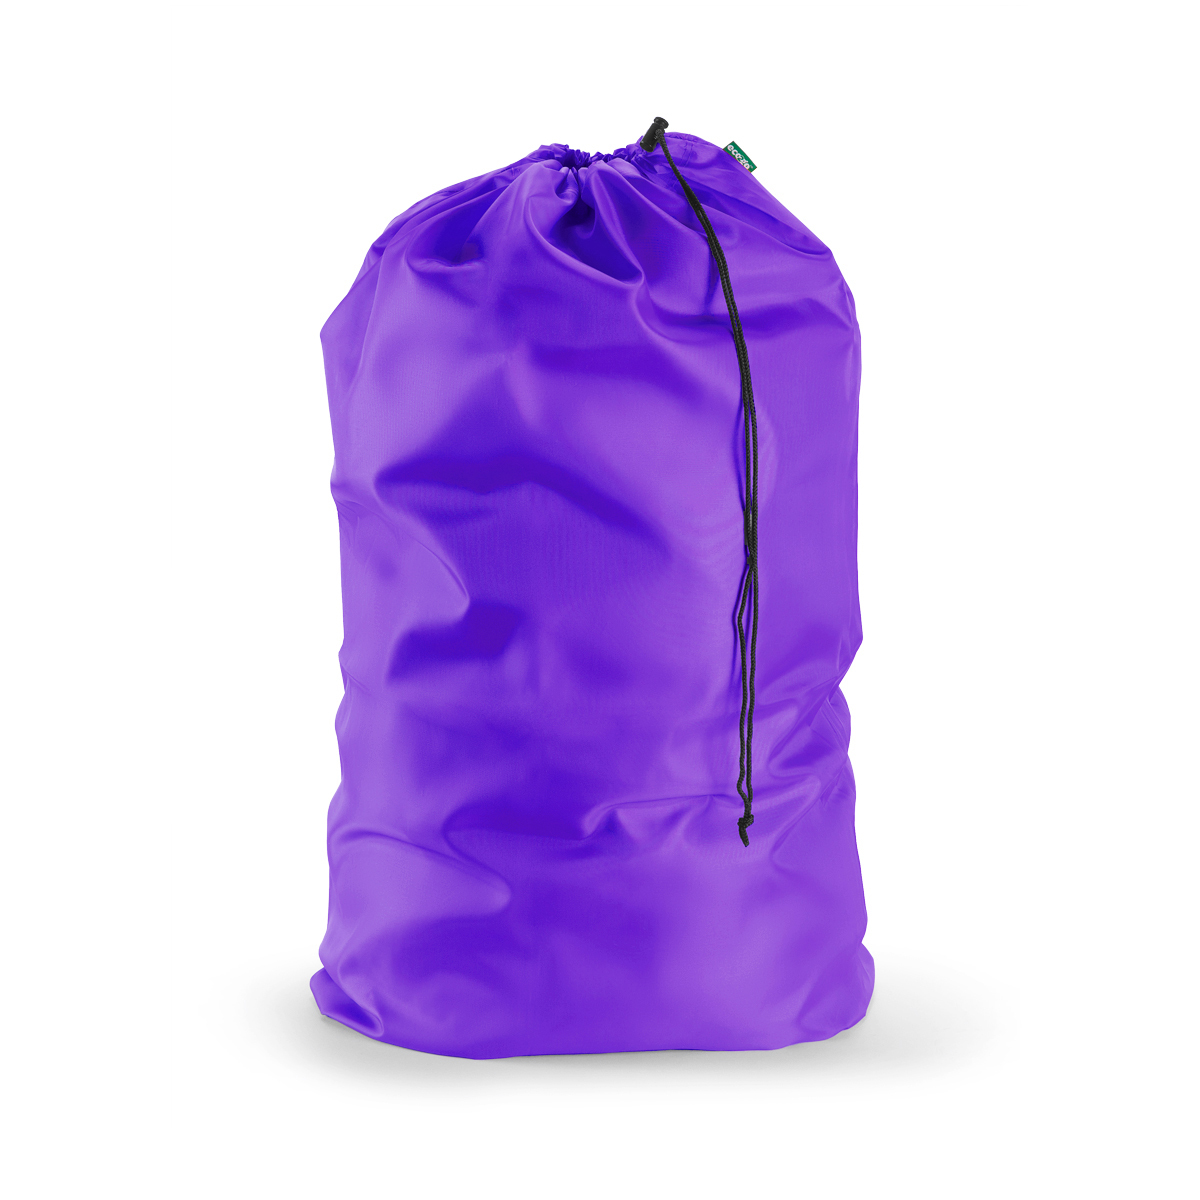 Extra Large Laundry Bag, Drawstring, Color: Purple, Jumbo Size